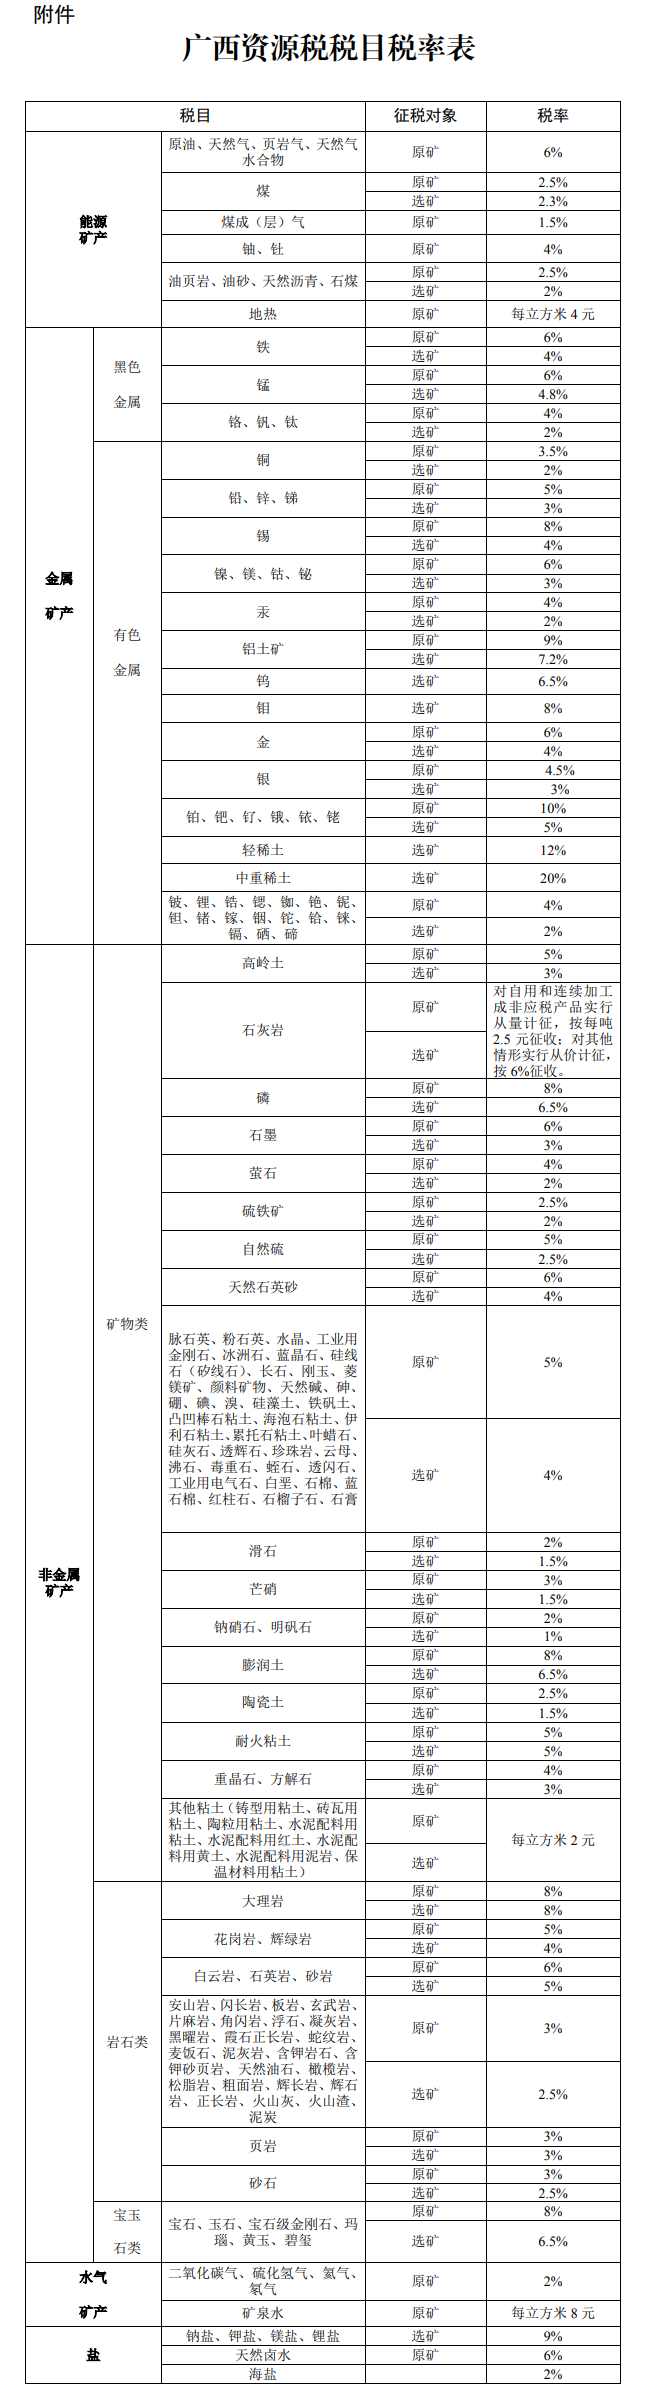 广西壮族自治区最新资源税适用税率通过！9月1日开始实行